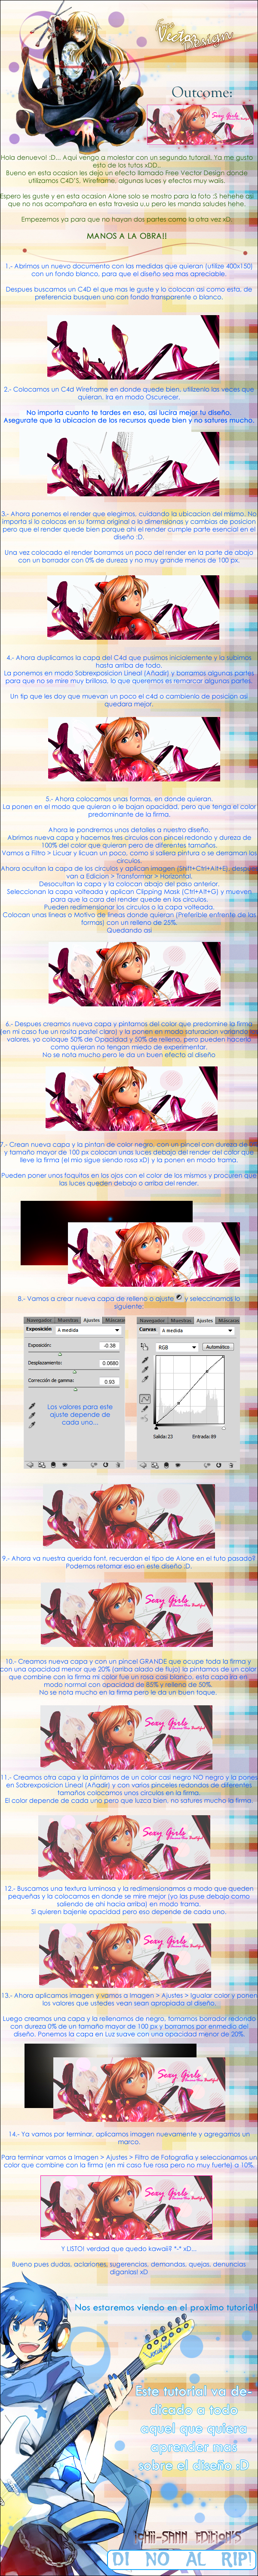 [Imagen: tutorial_free_vector_design_by_ichii_sann-d3fifvu.jpg]